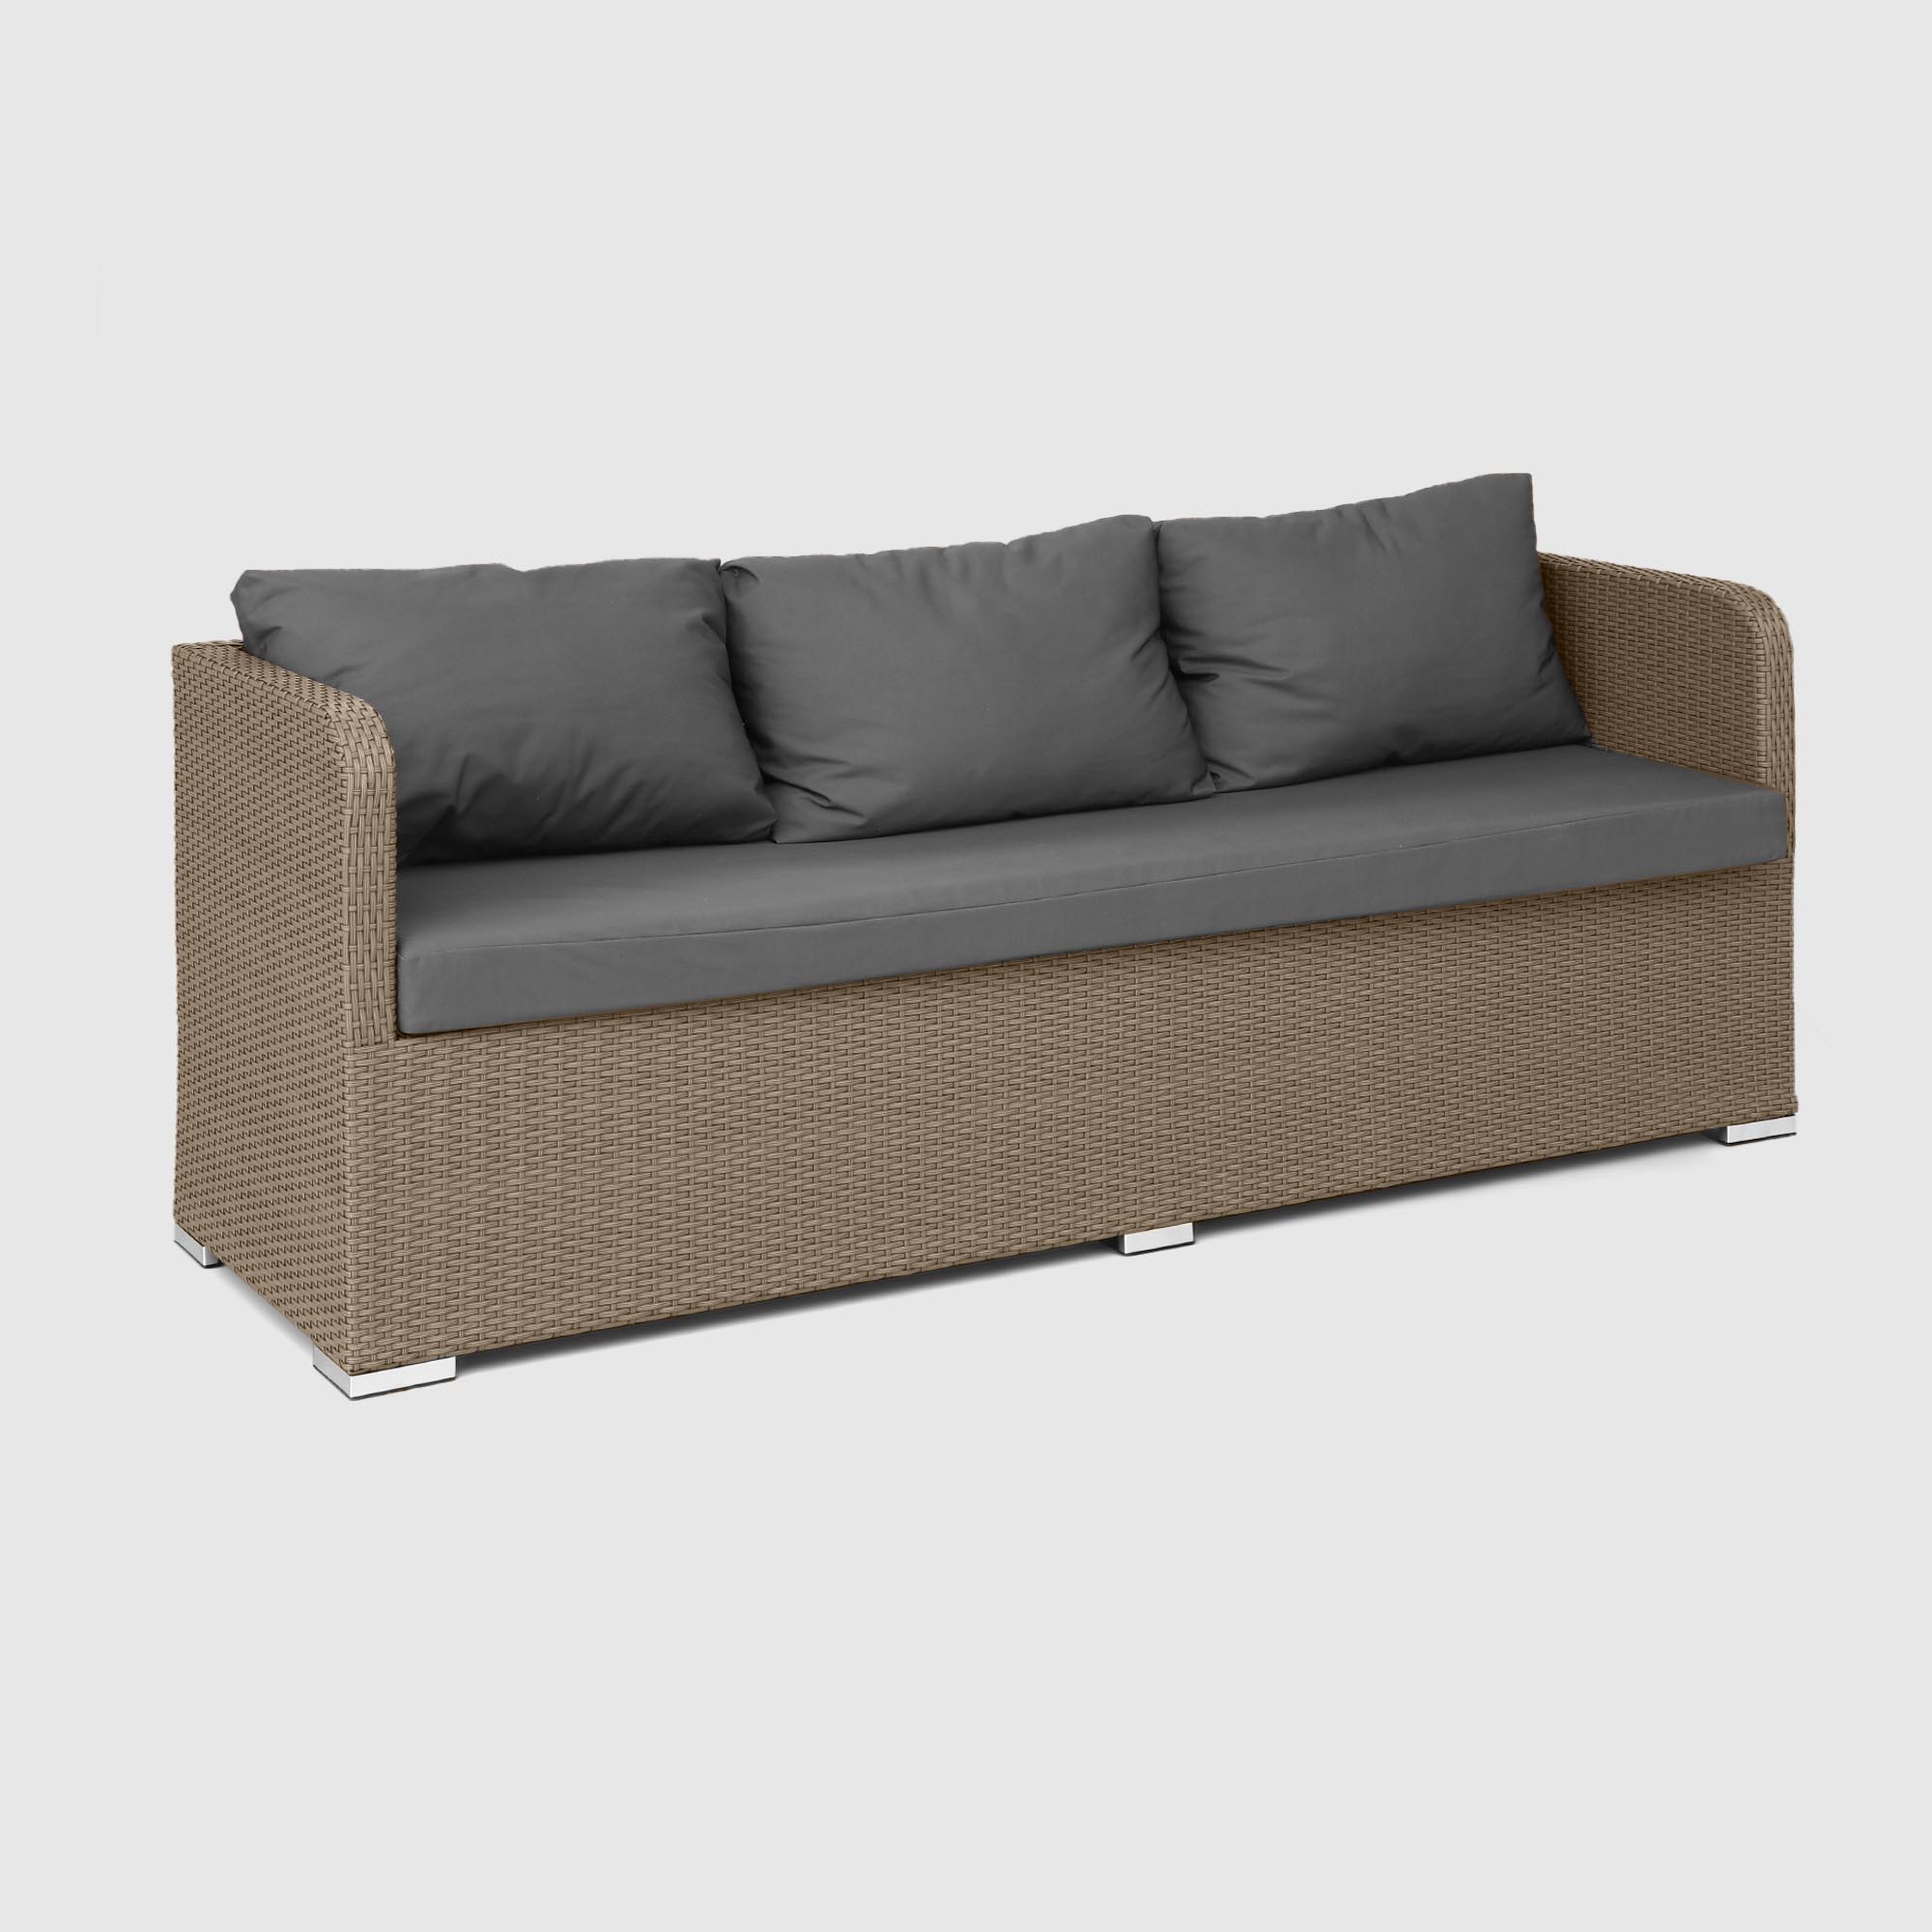 Комплект мебели NS Rattan LWS 21 коричневый с серым 3 предмета, цвет светло-коричневый, размер 220х75х75 - фото 7